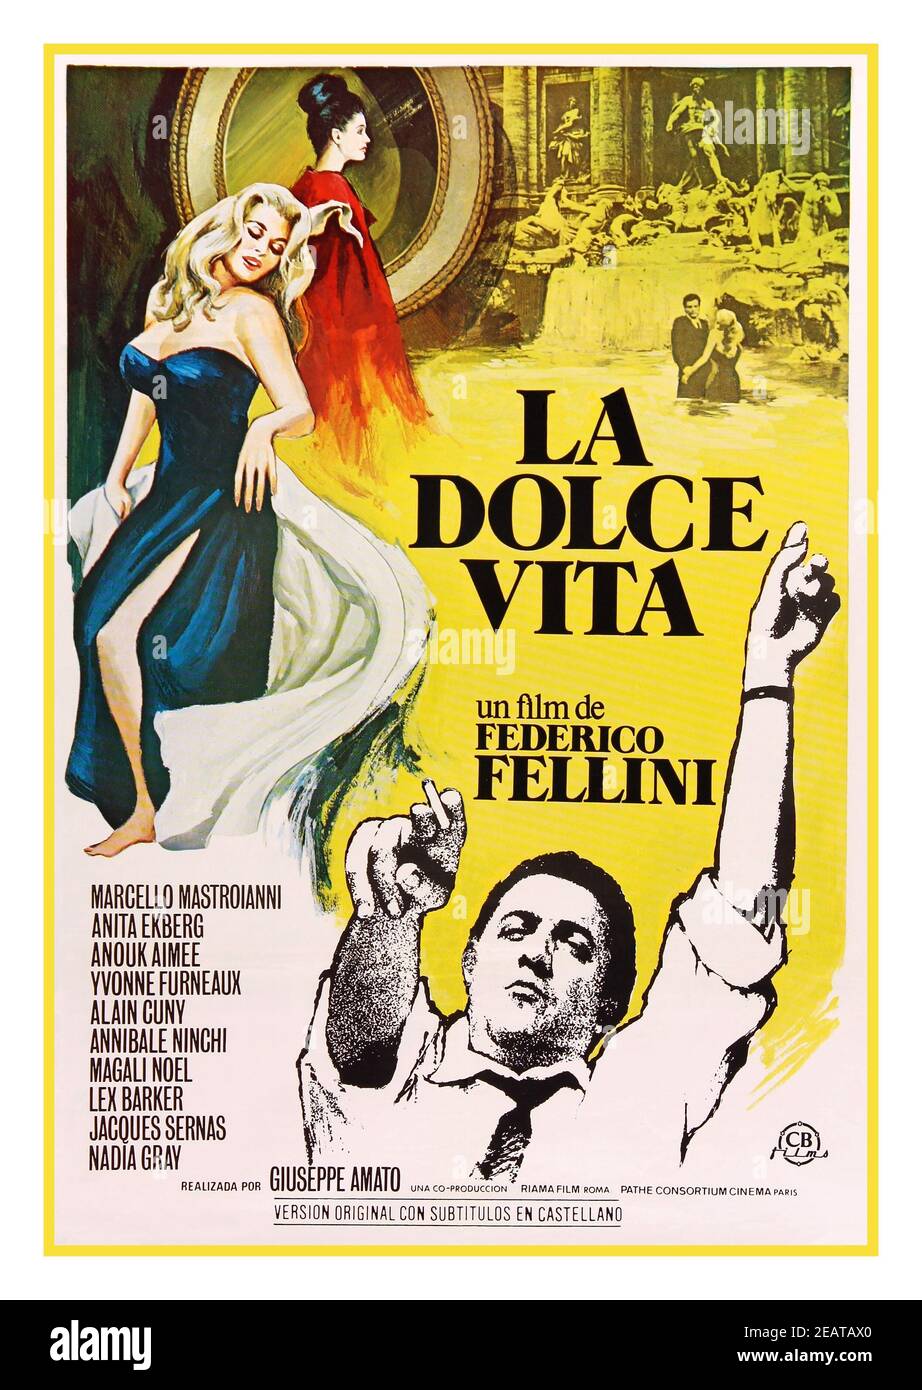 LA DOLCE VITA Vintage 1960 's cine póster italiano para 'la dulce vida' o 'la buena vida' una película de comedia-drama de 1960 dirigida y co-escrita por Federico Fellini. La película sigue a Marcello Rubini (Marcello Mastroianni), un periodista que escribe para revistas de chismes, en su viaje por la "vida de la vida" de Roma en una búsqueda infructuosa de amor y felicidad. El guión, fue co-escrito por Fellini y otros tres guionistas, Foto de stock